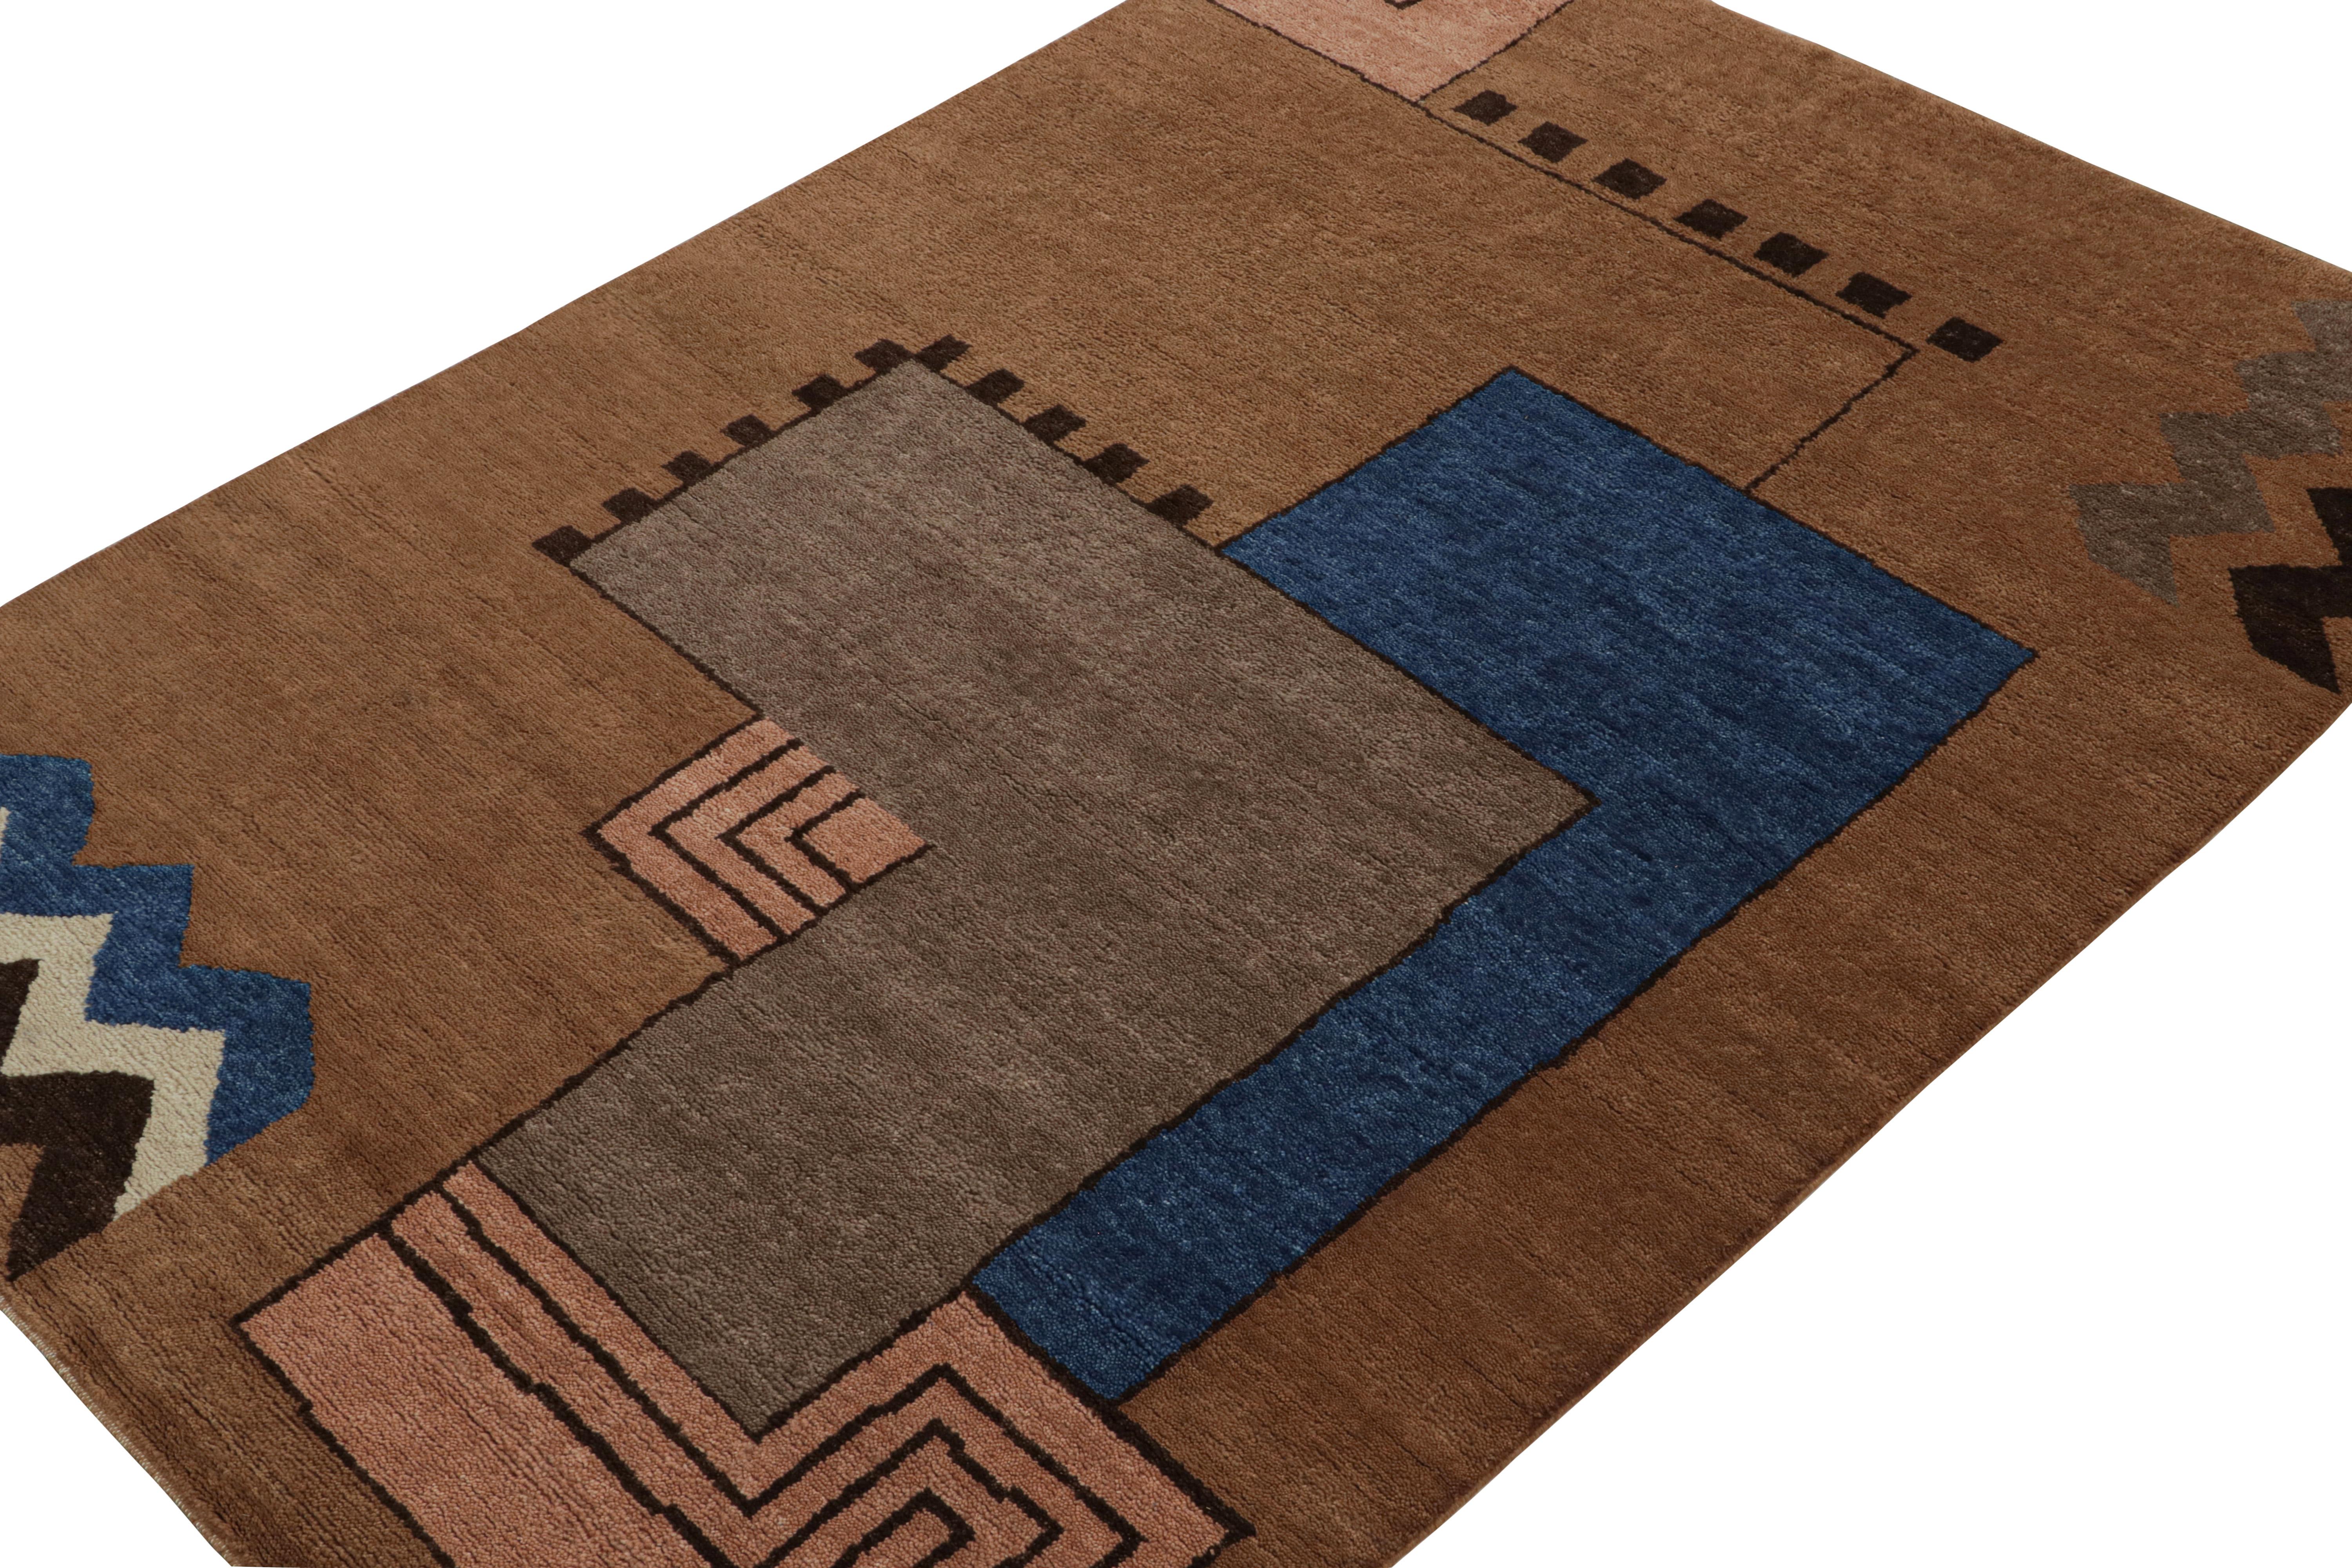 Noué à la main en laine, ce tapis moderne 6x9 représente la collection de tapis Art déco français de Rug & Kilim.

Sur le Design : 

Cette pièce s'inspire des tapis cubistes de style Art déco de la sensibilité européenne des années 1920. Son design